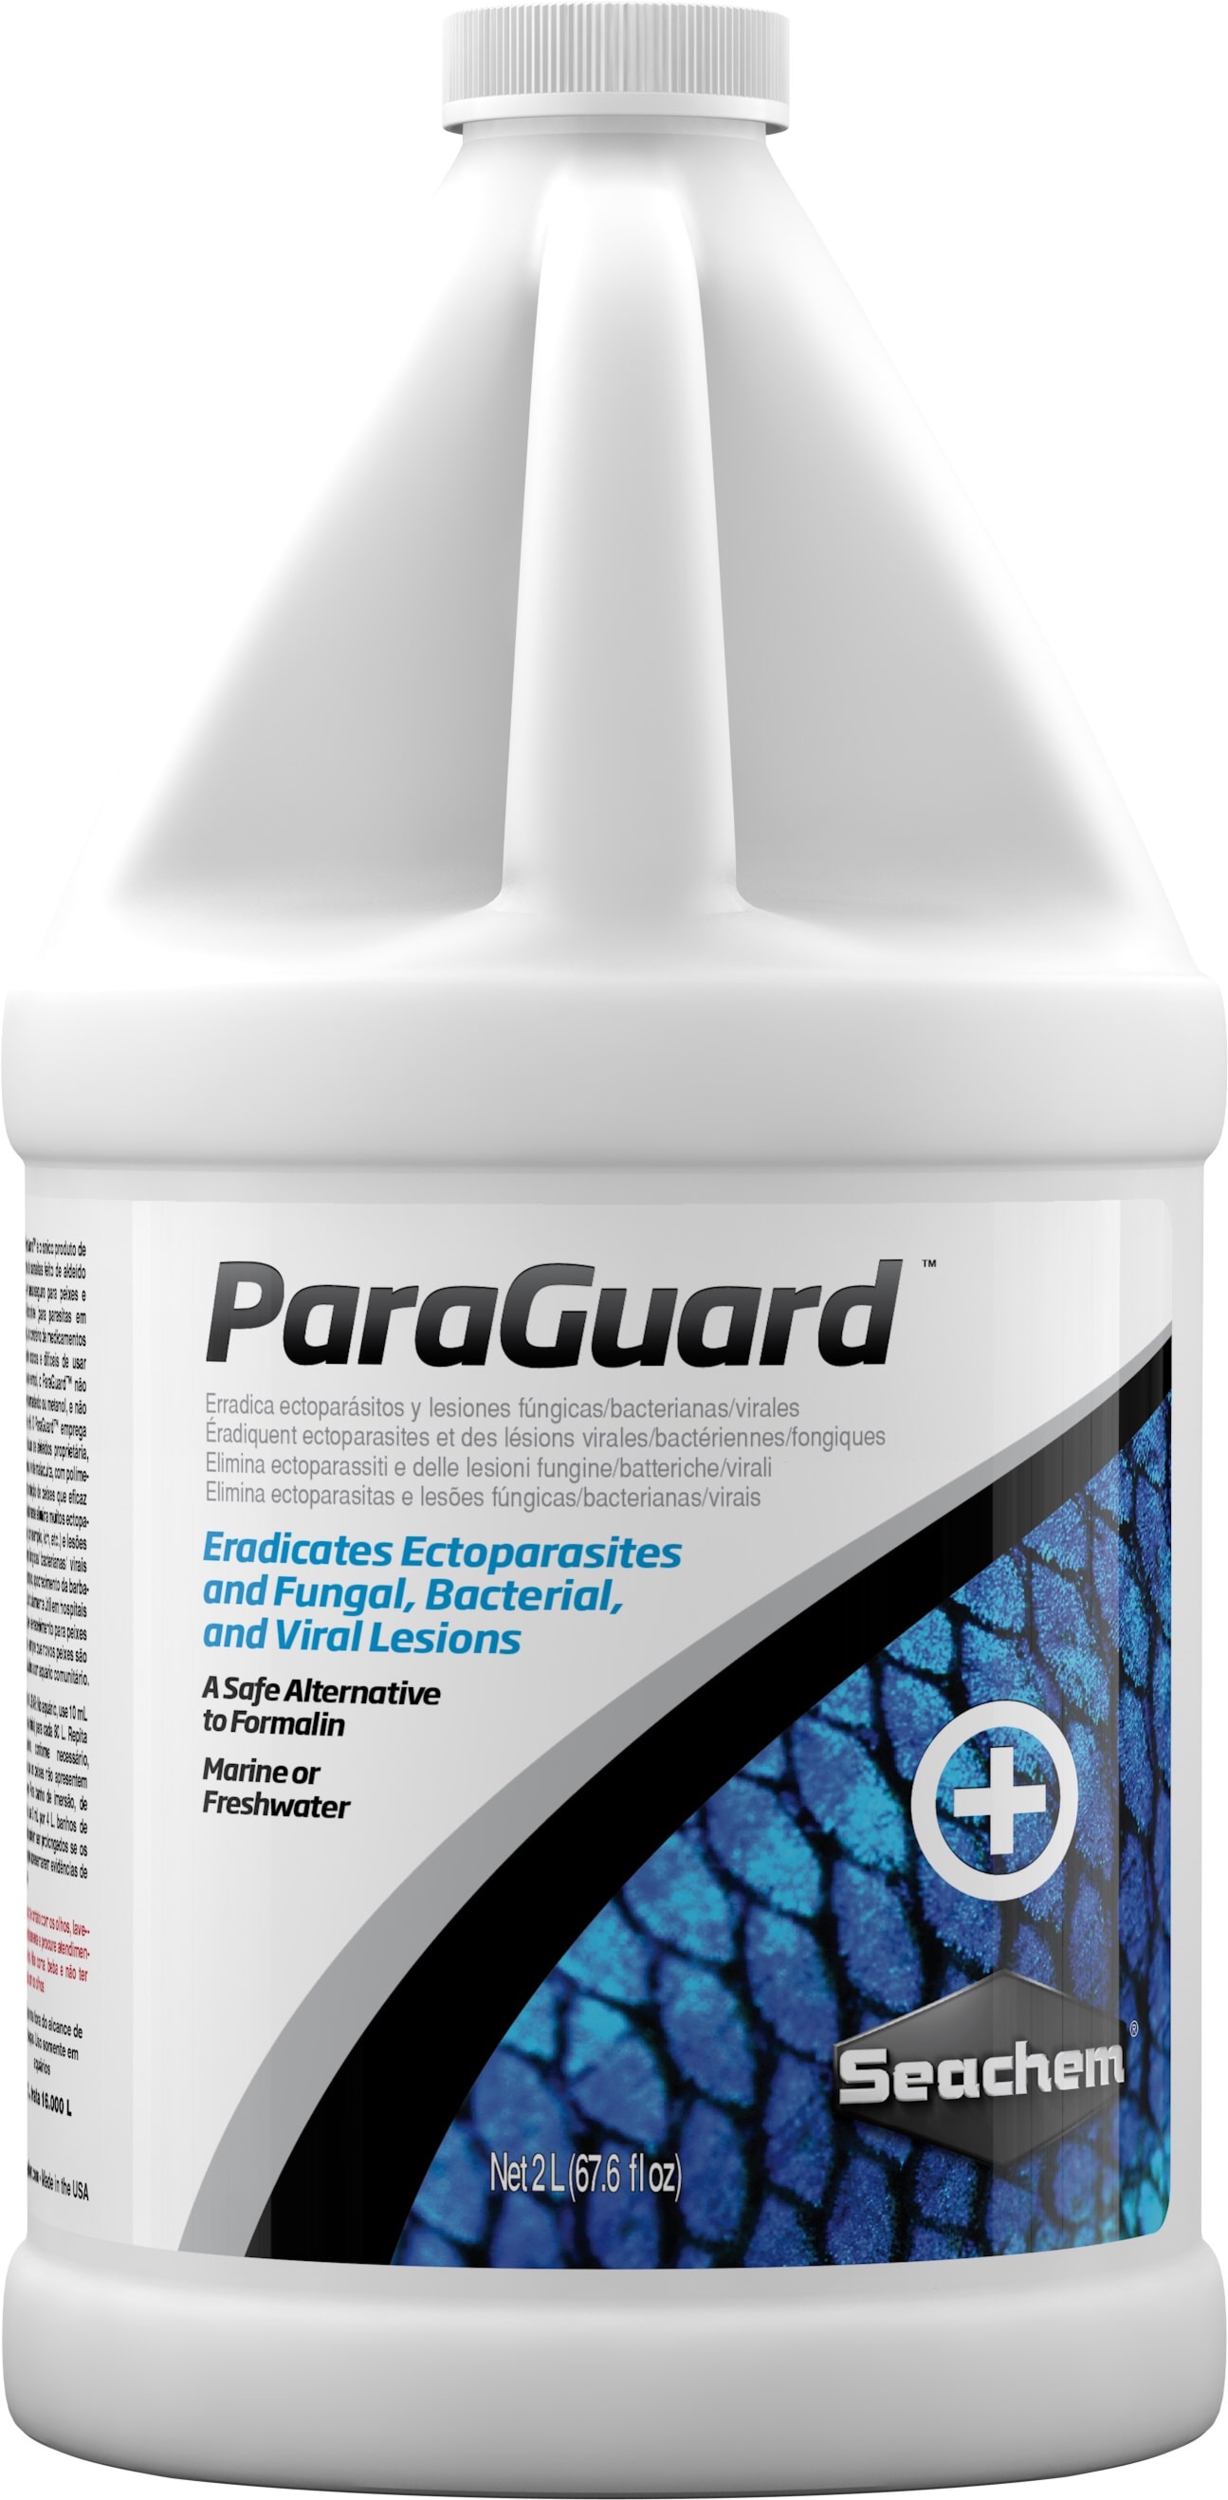 SEACHEM ParaGuard 2 L traitement contre les ectoparasites et lésions fongiques, bactériennes ou virales